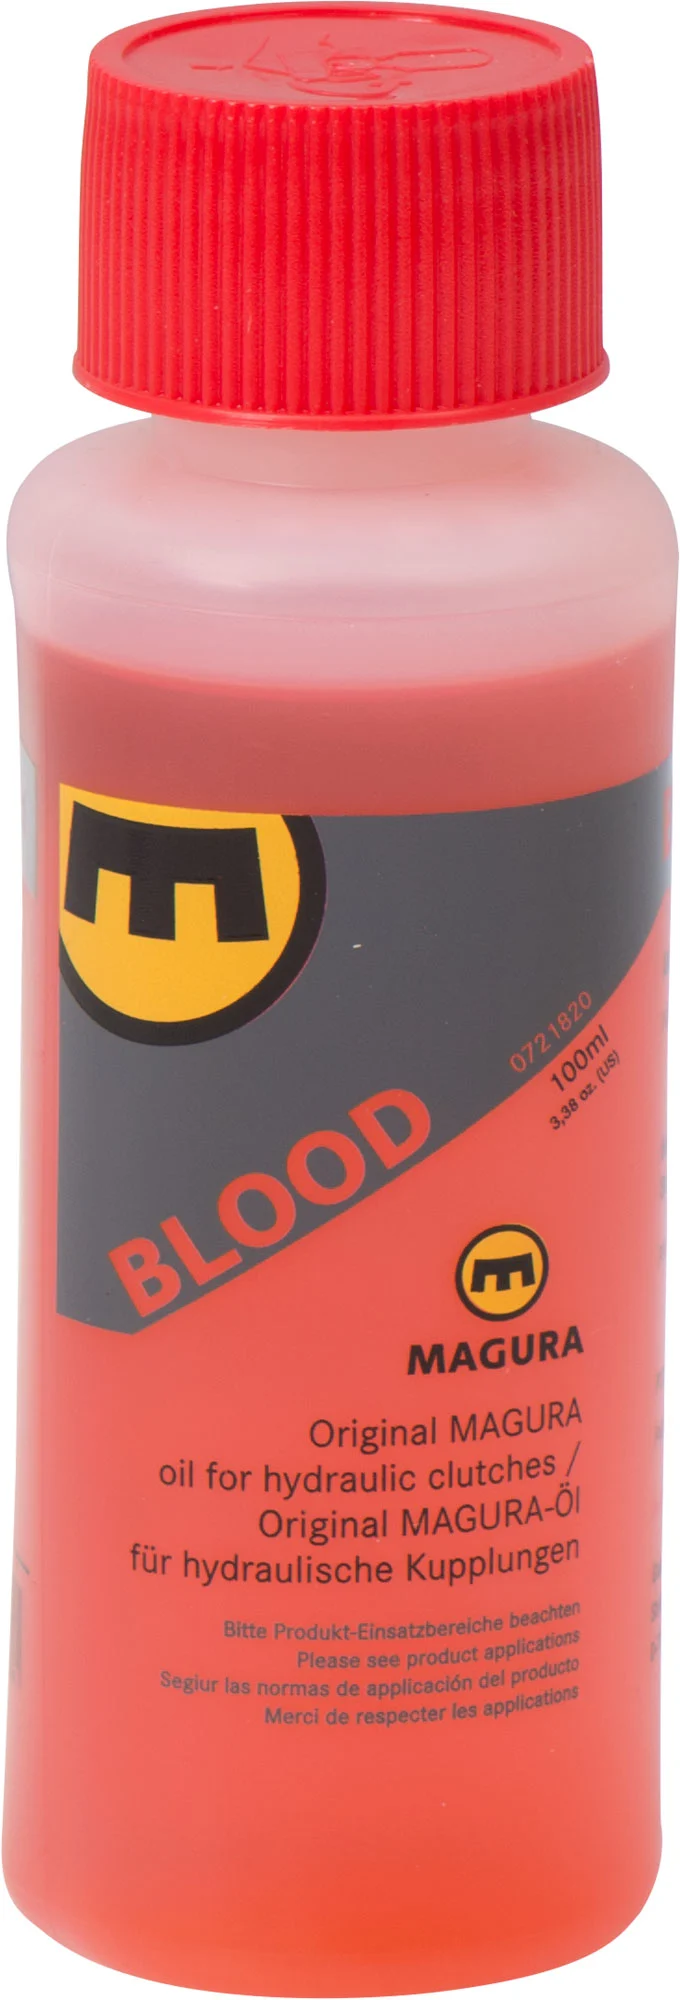 MAGURA BLOOD 100 ML